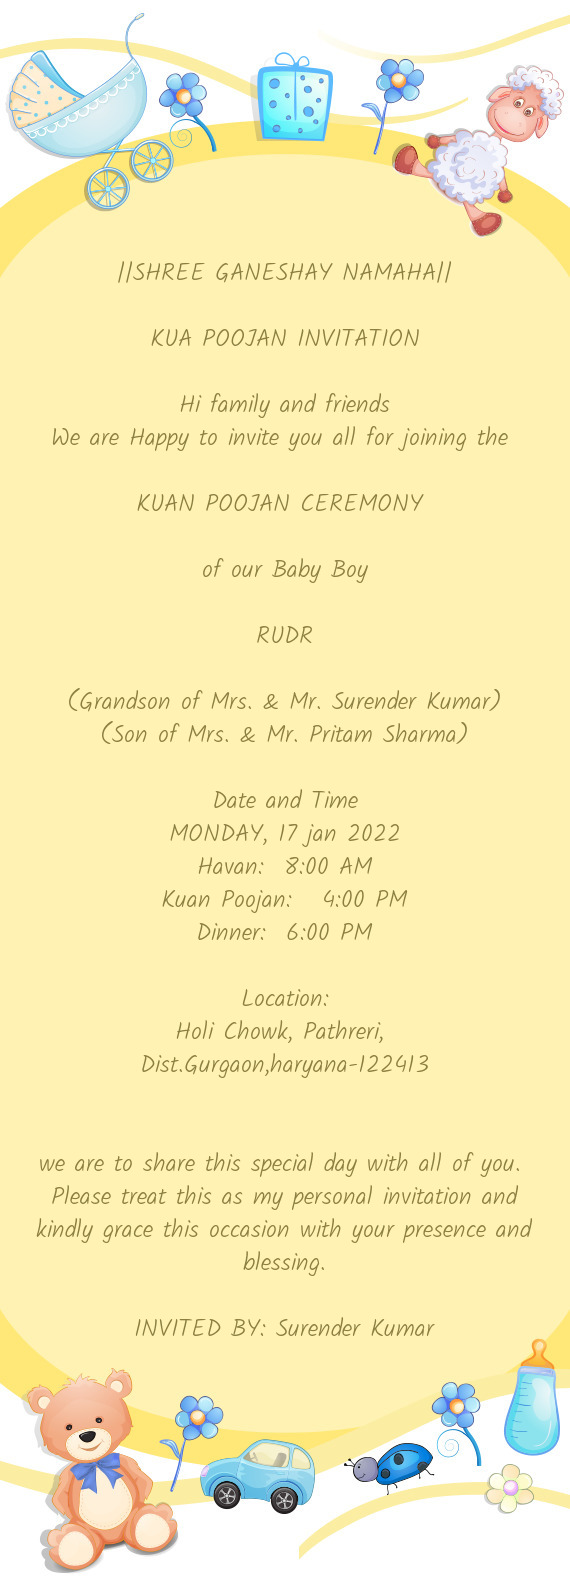 (Grandson of Mrs. & Mr. Surender Kumar)